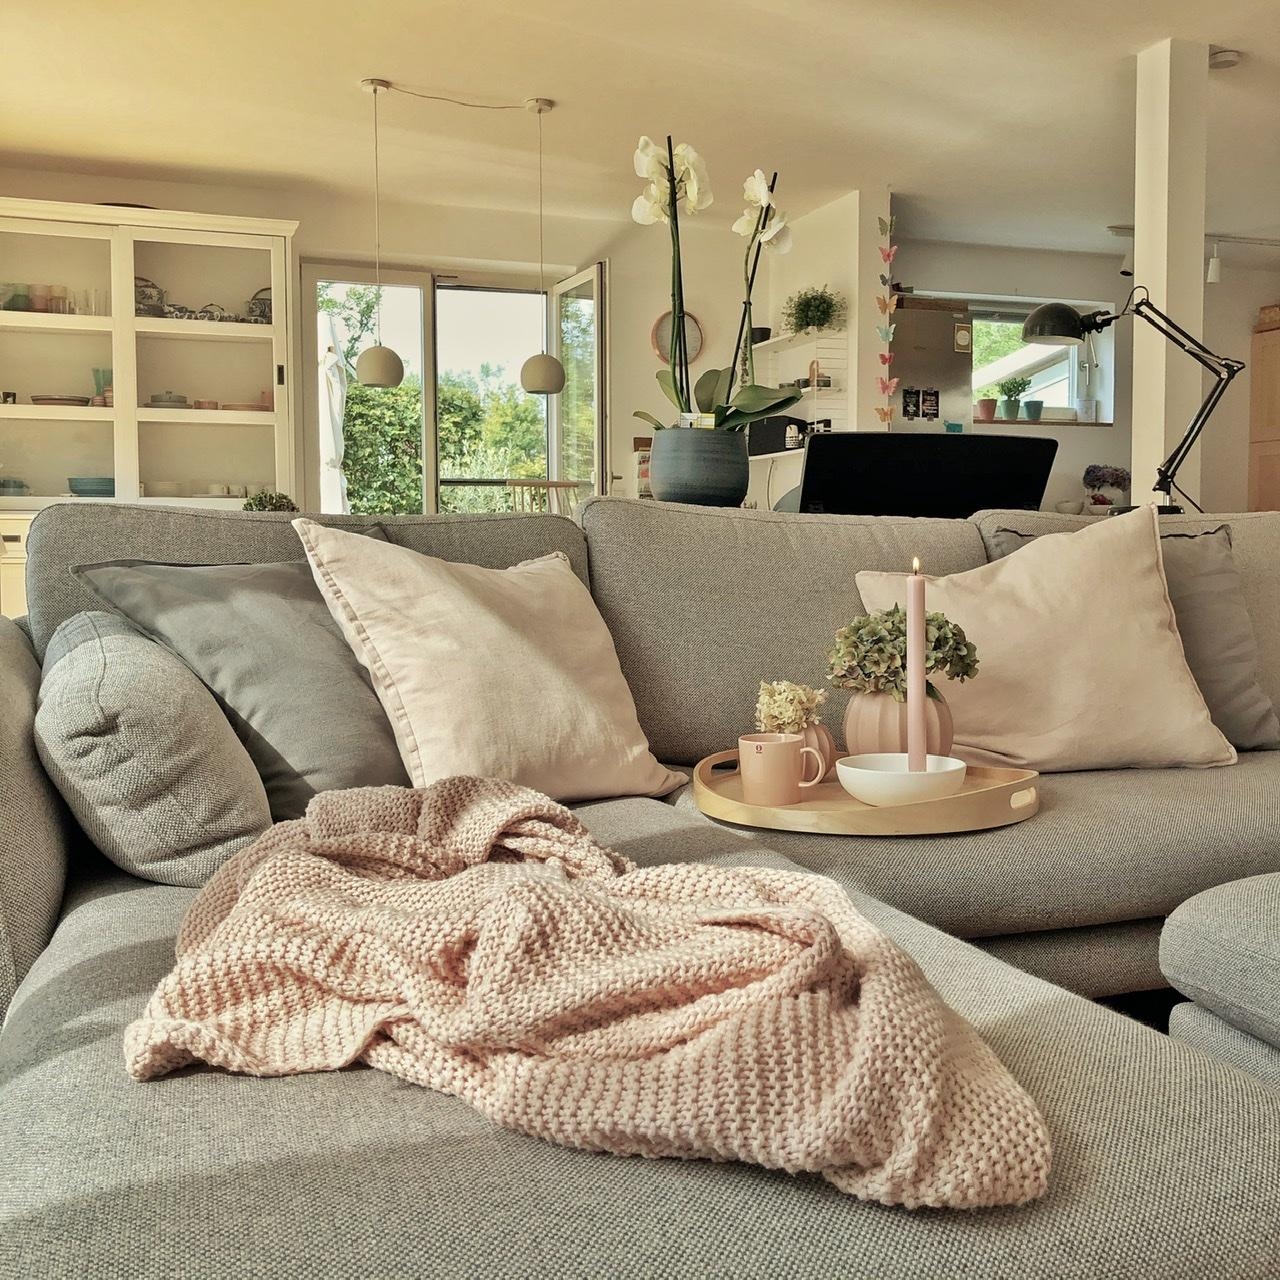 Die #herbstsonne auf dem Sofa genießen...
#hygge #livingchallenge #wohnzimmer #rosaliebe #cozyhome #relax #nordicliving